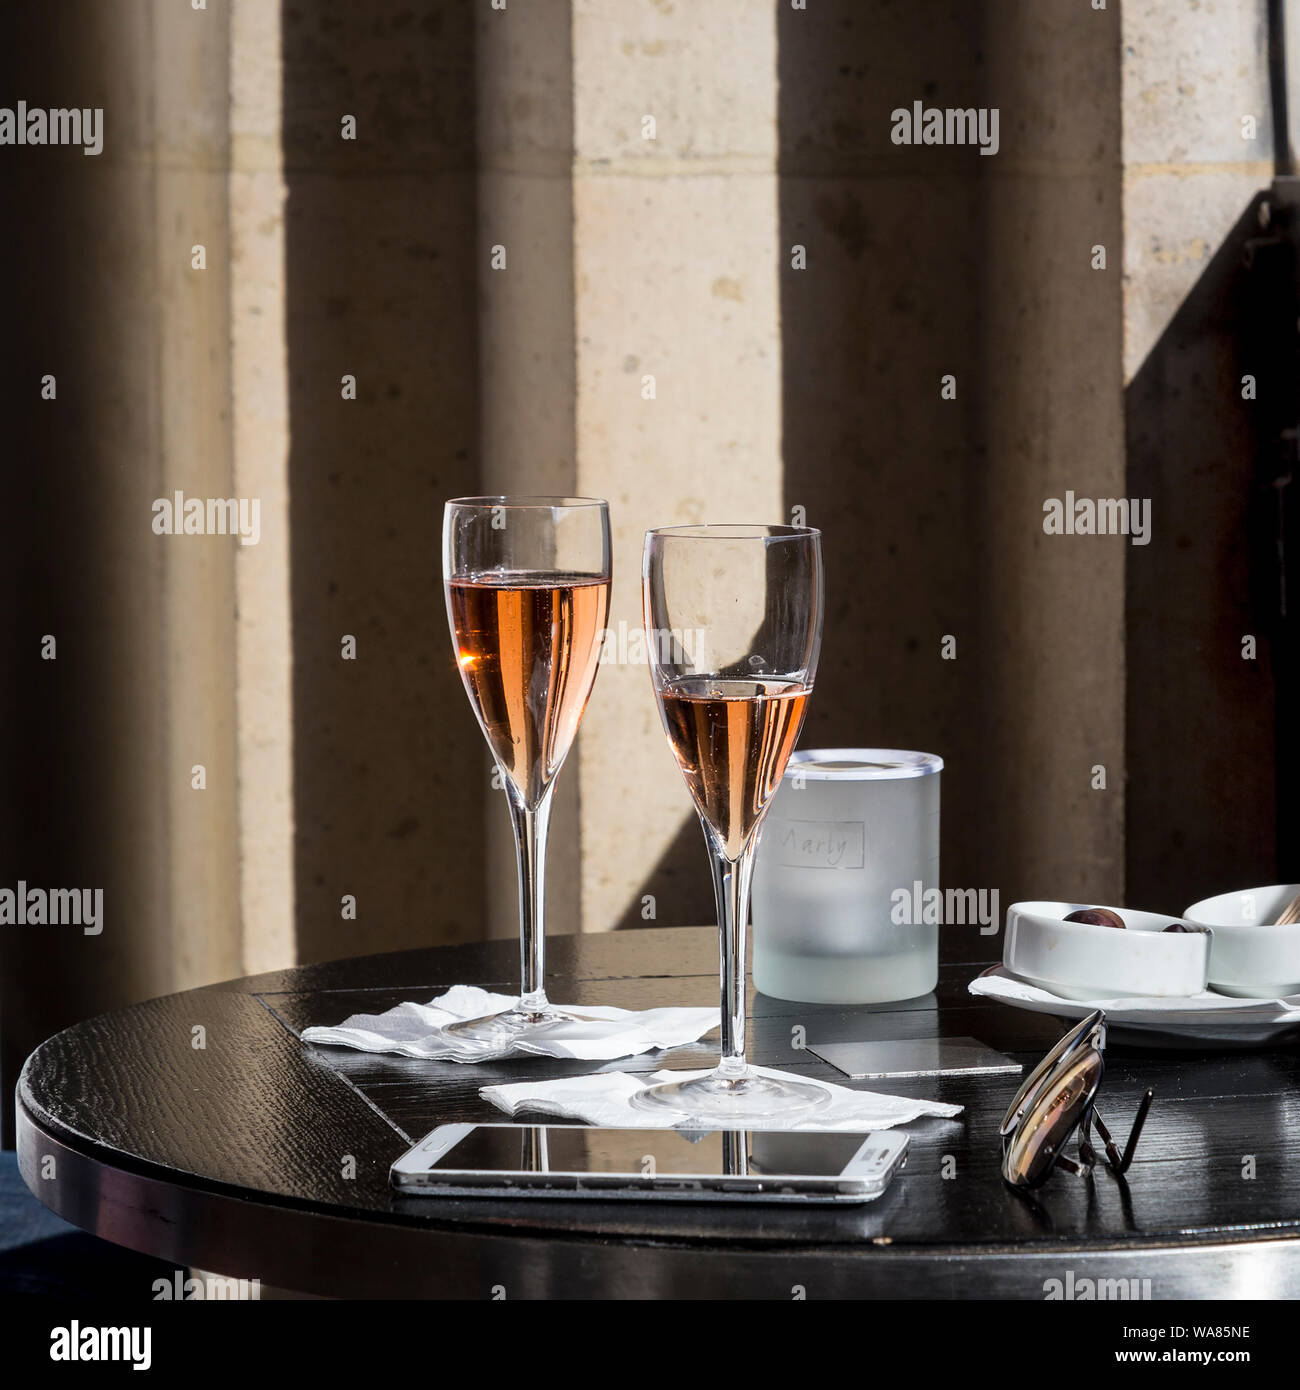 Cafe Marly No5 è stata presa al Cafe Marly, Parigi, Francia. Esso raffigura un elegante e romantico con due bicchieri di vino rosato su un nero tavola rotonda. Foto Stock